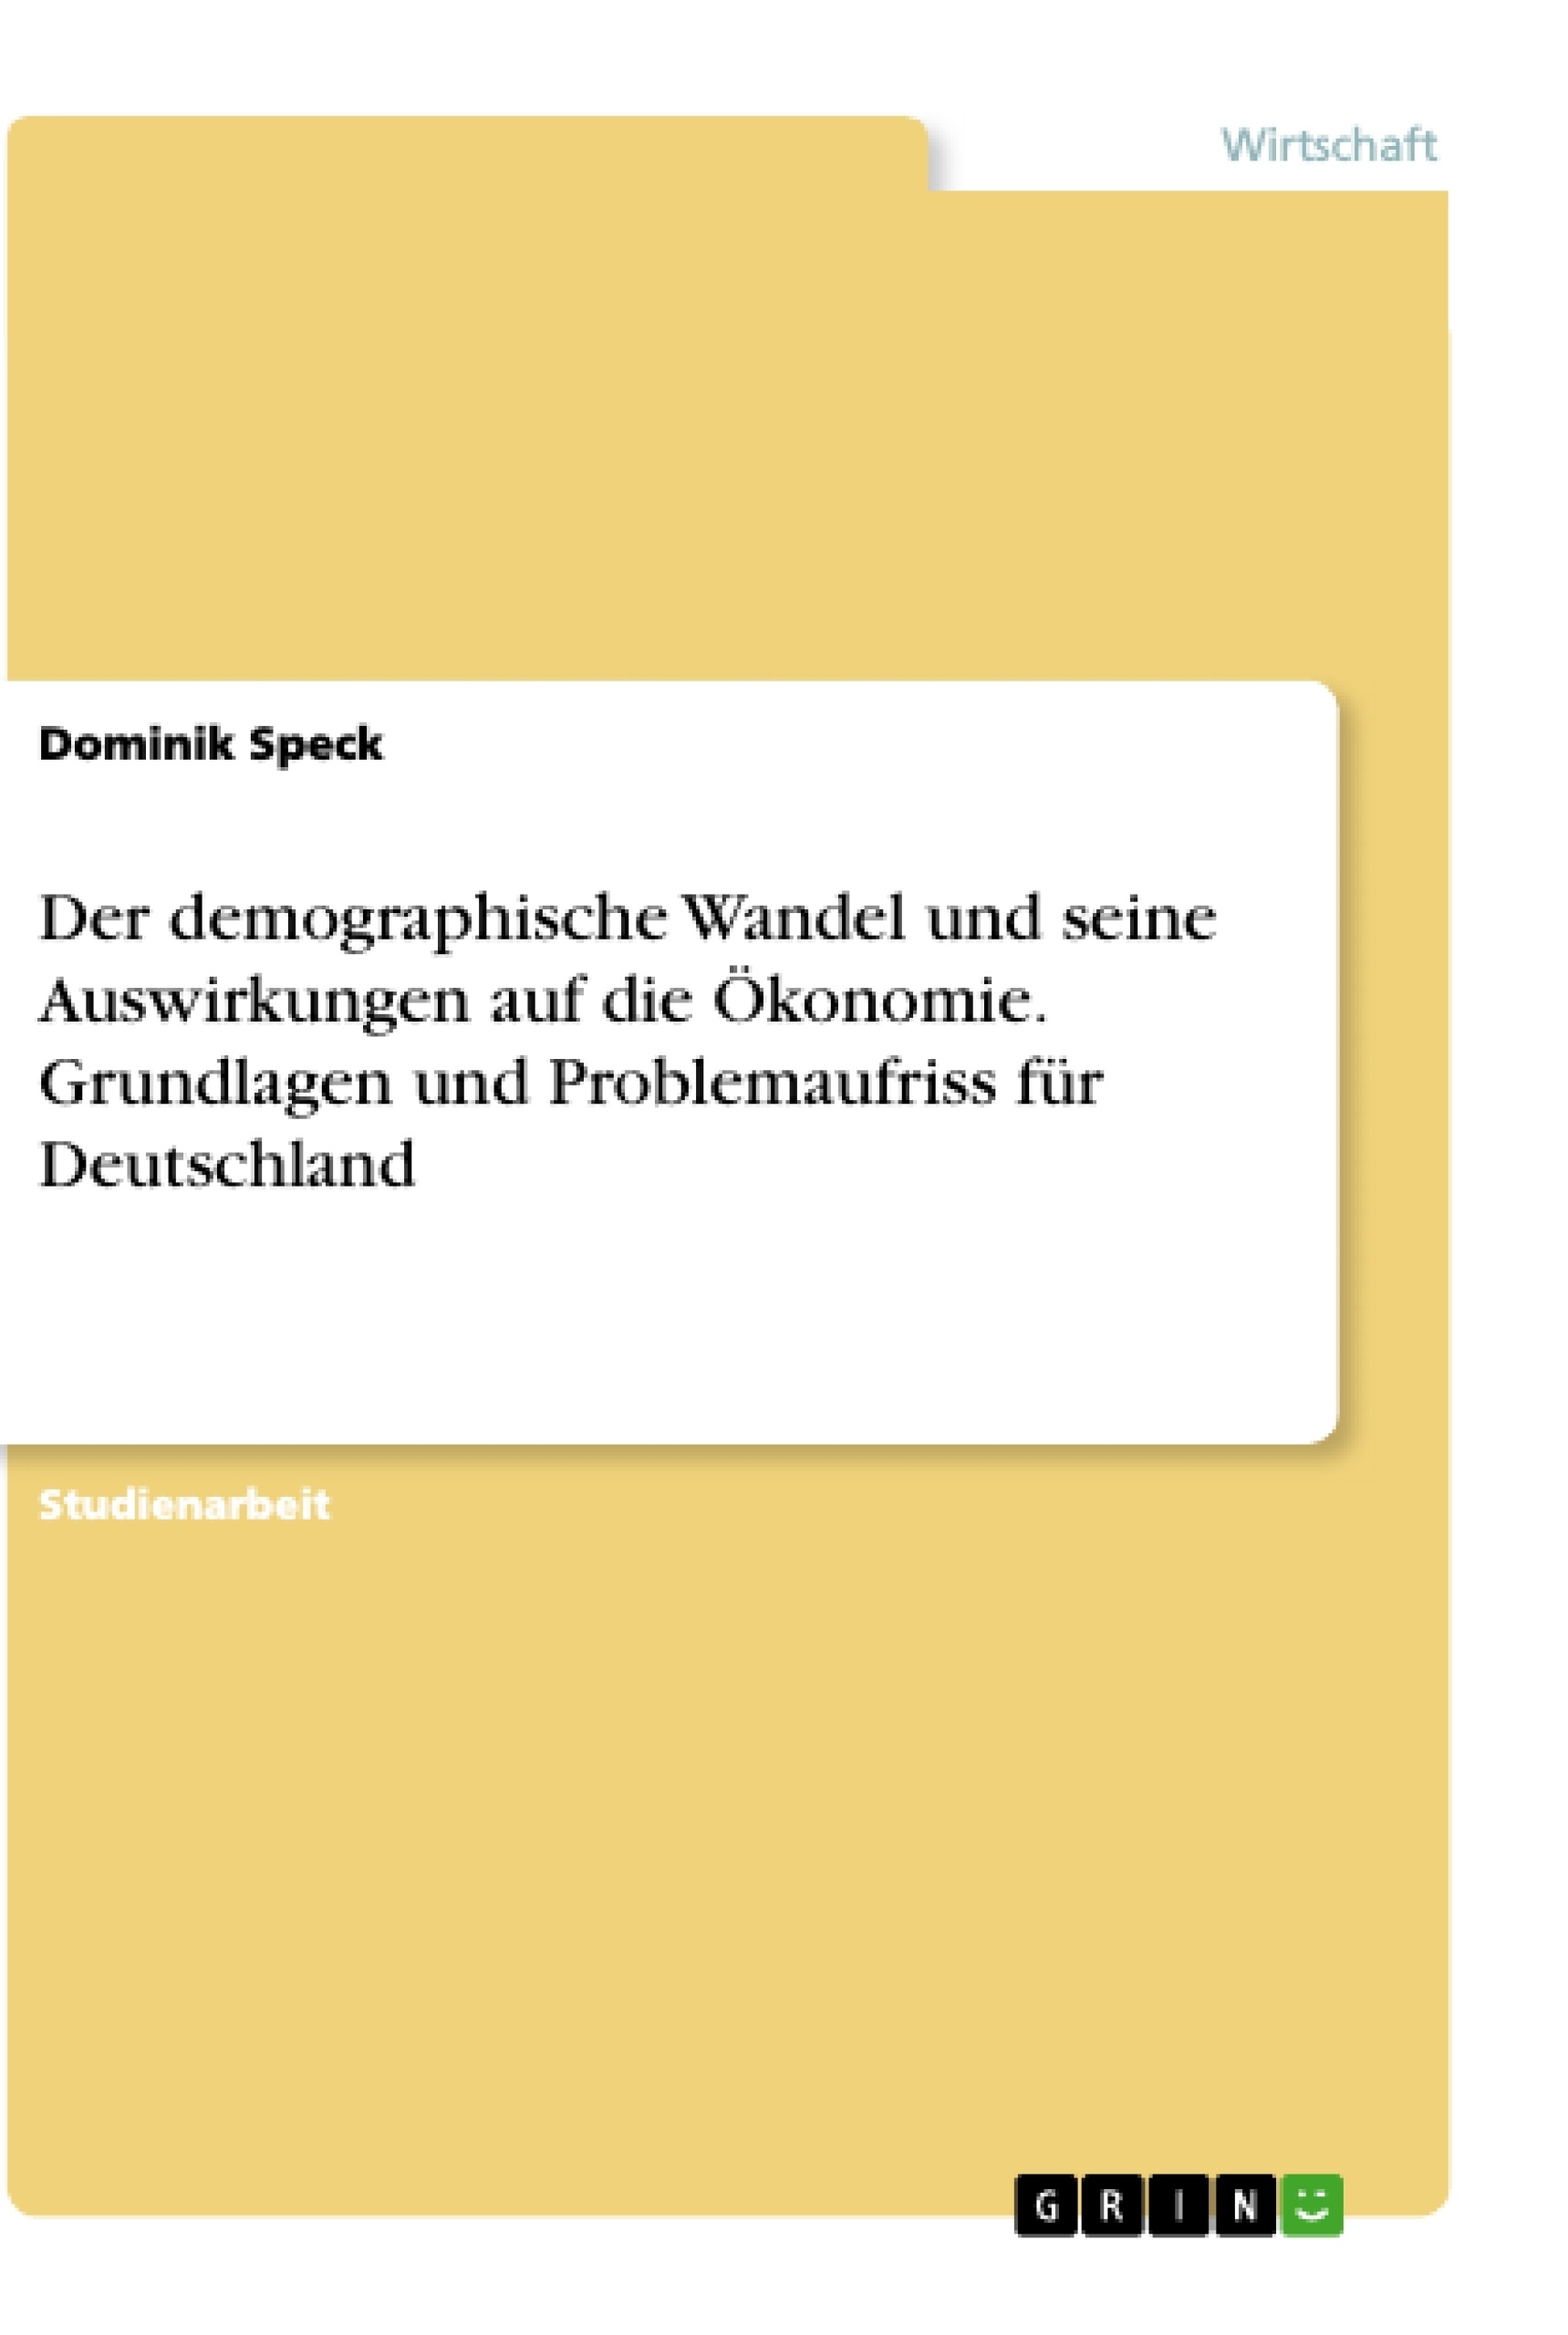 Título: Der demographische Wandel und seine Auswirkungen auf die Ökonomie. Grundlagen und Problemaufriss für Deutschland